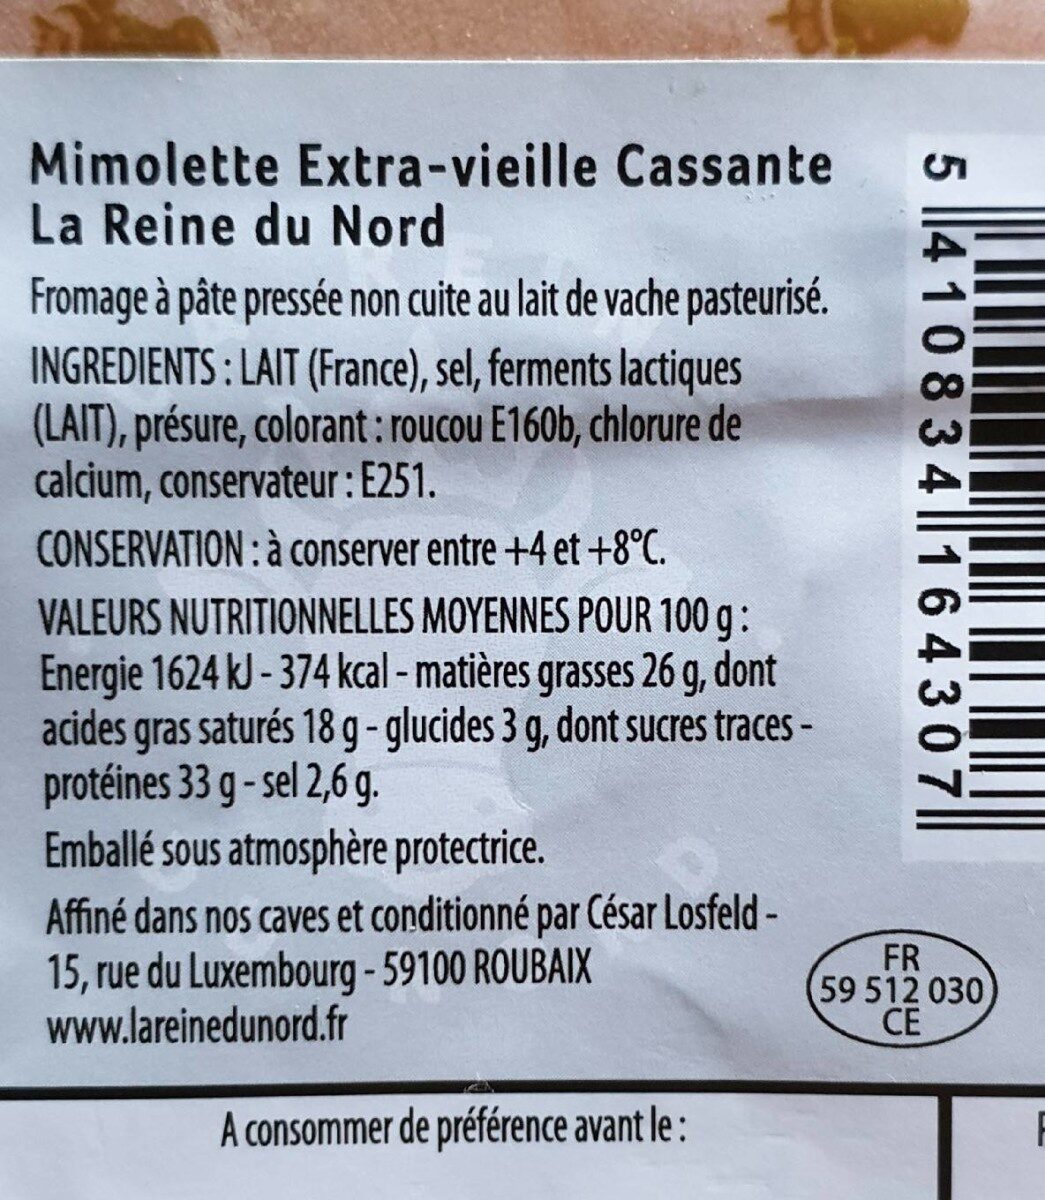 Mimolette Extra vielle Cassante - Tableau nutritionnel